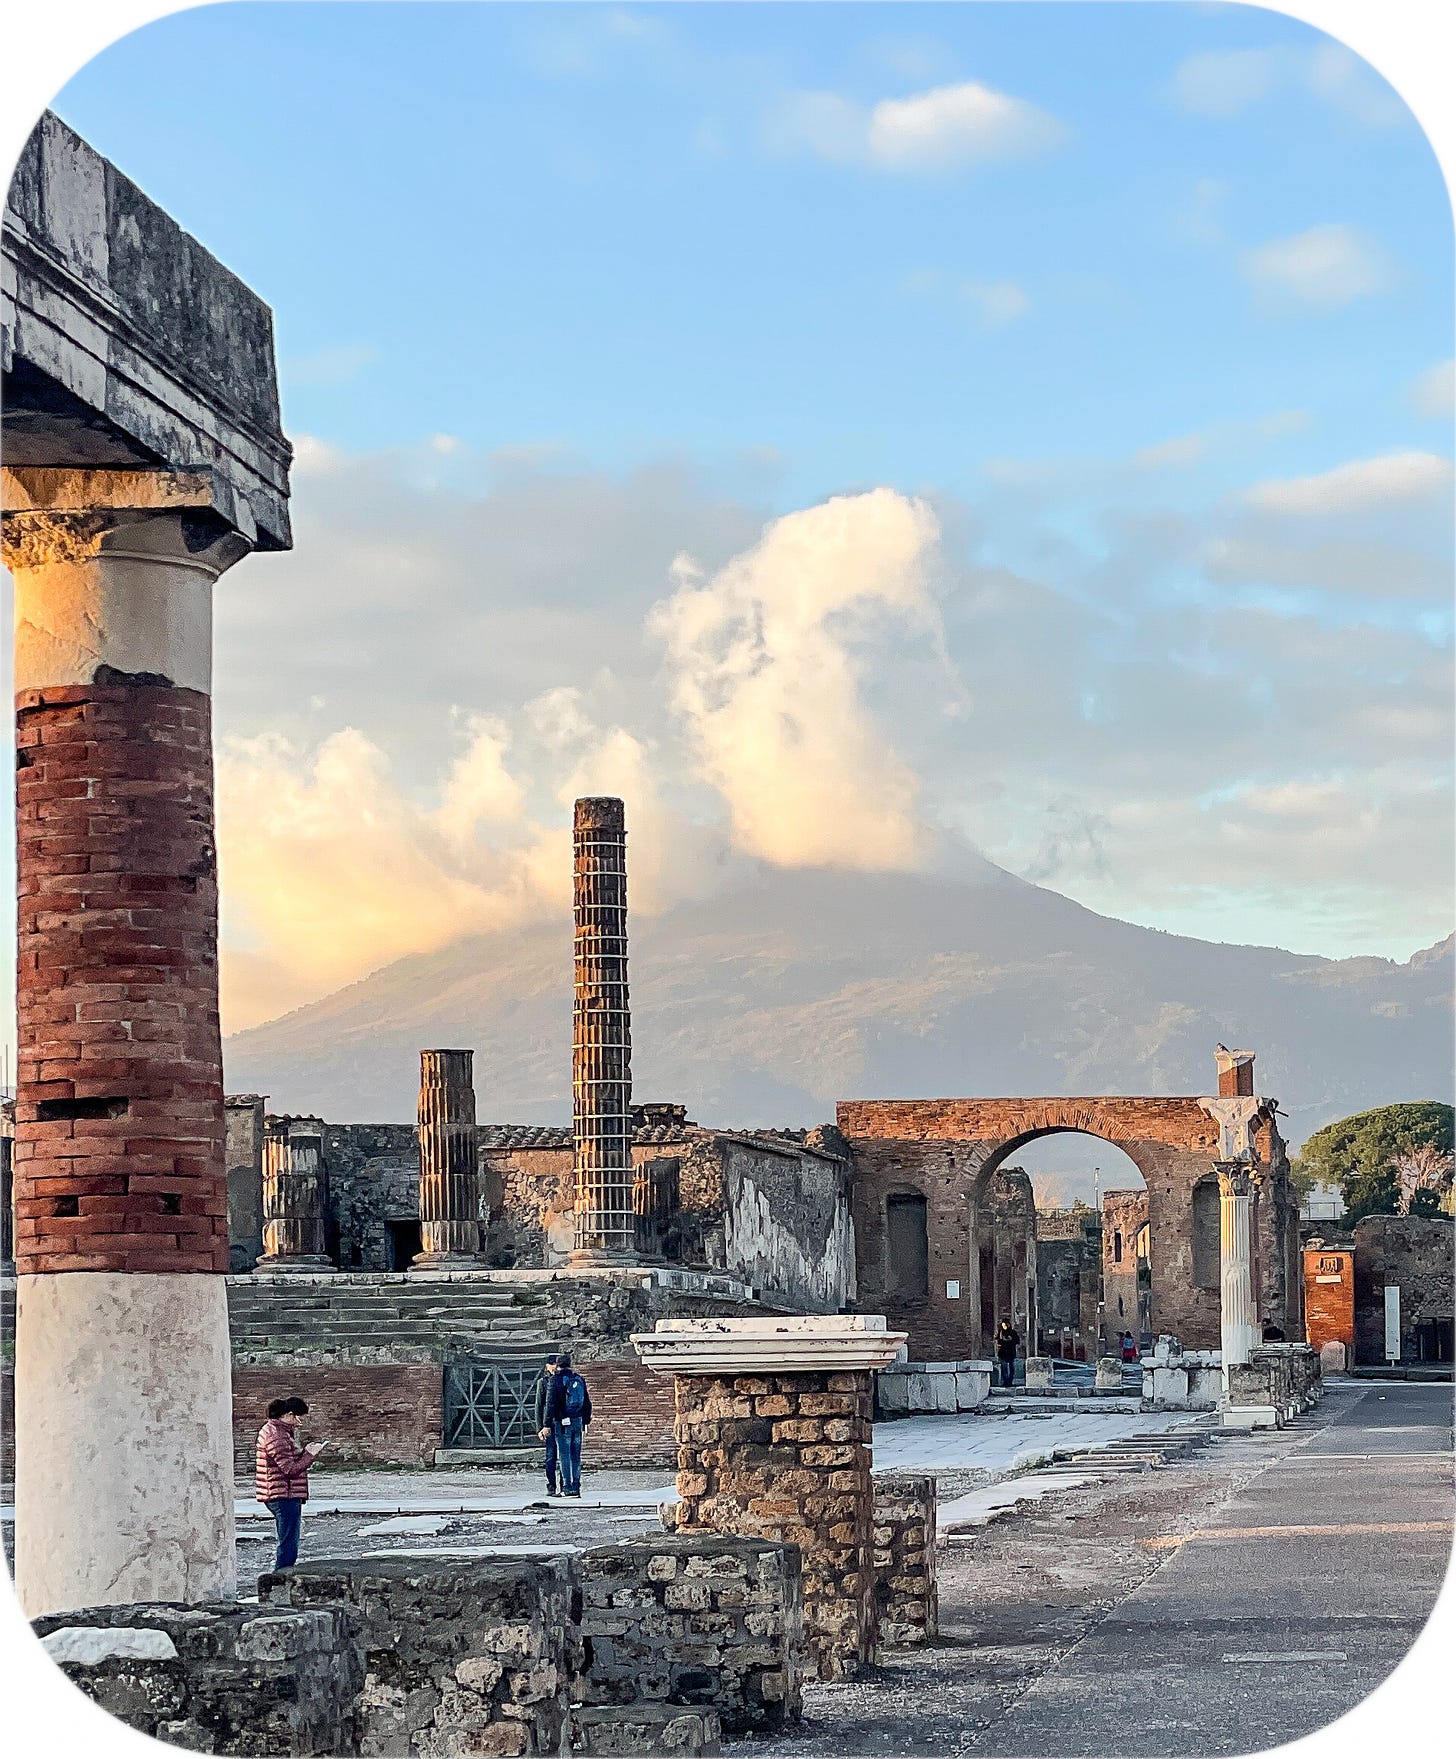 Mount Vesuvius, near Pompeii